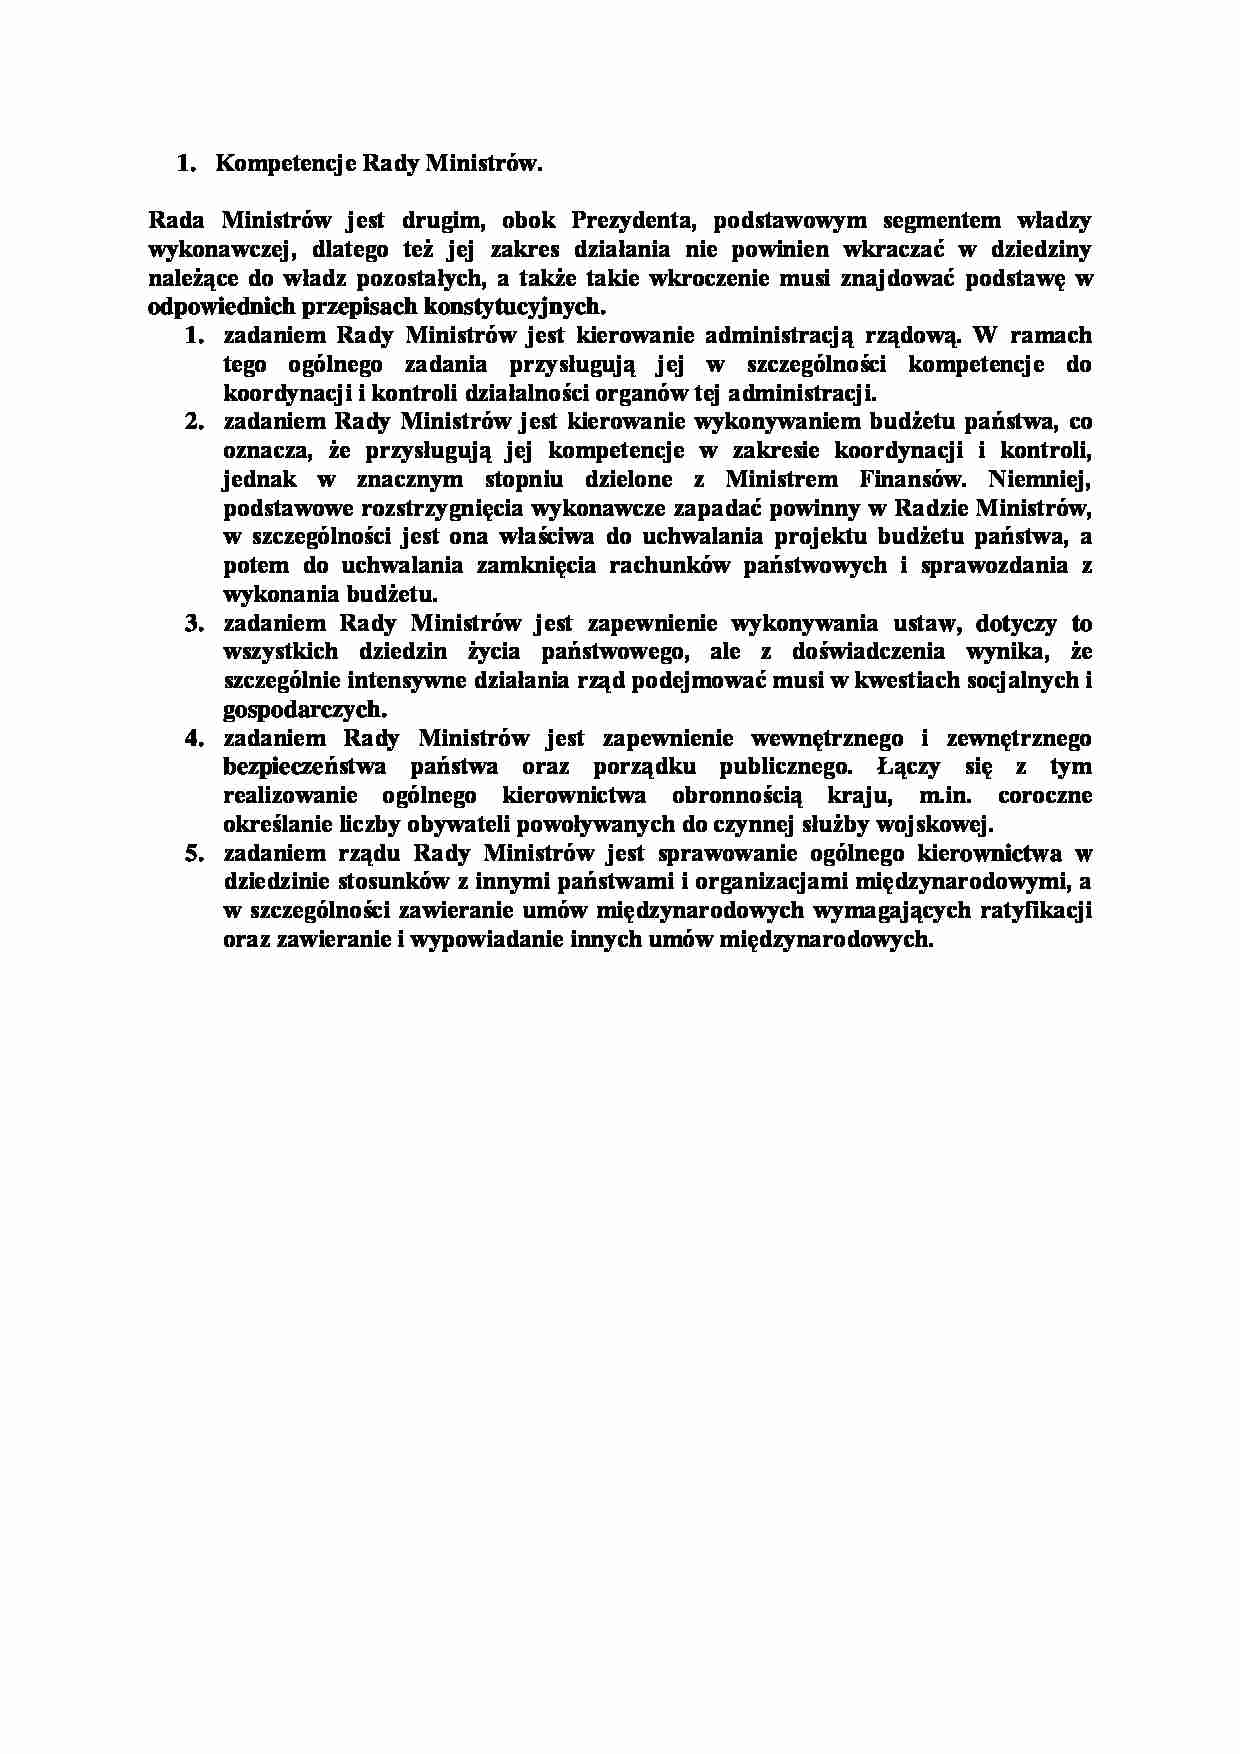 Kompetencje Rady Ministrów-opracowanie - strona 1